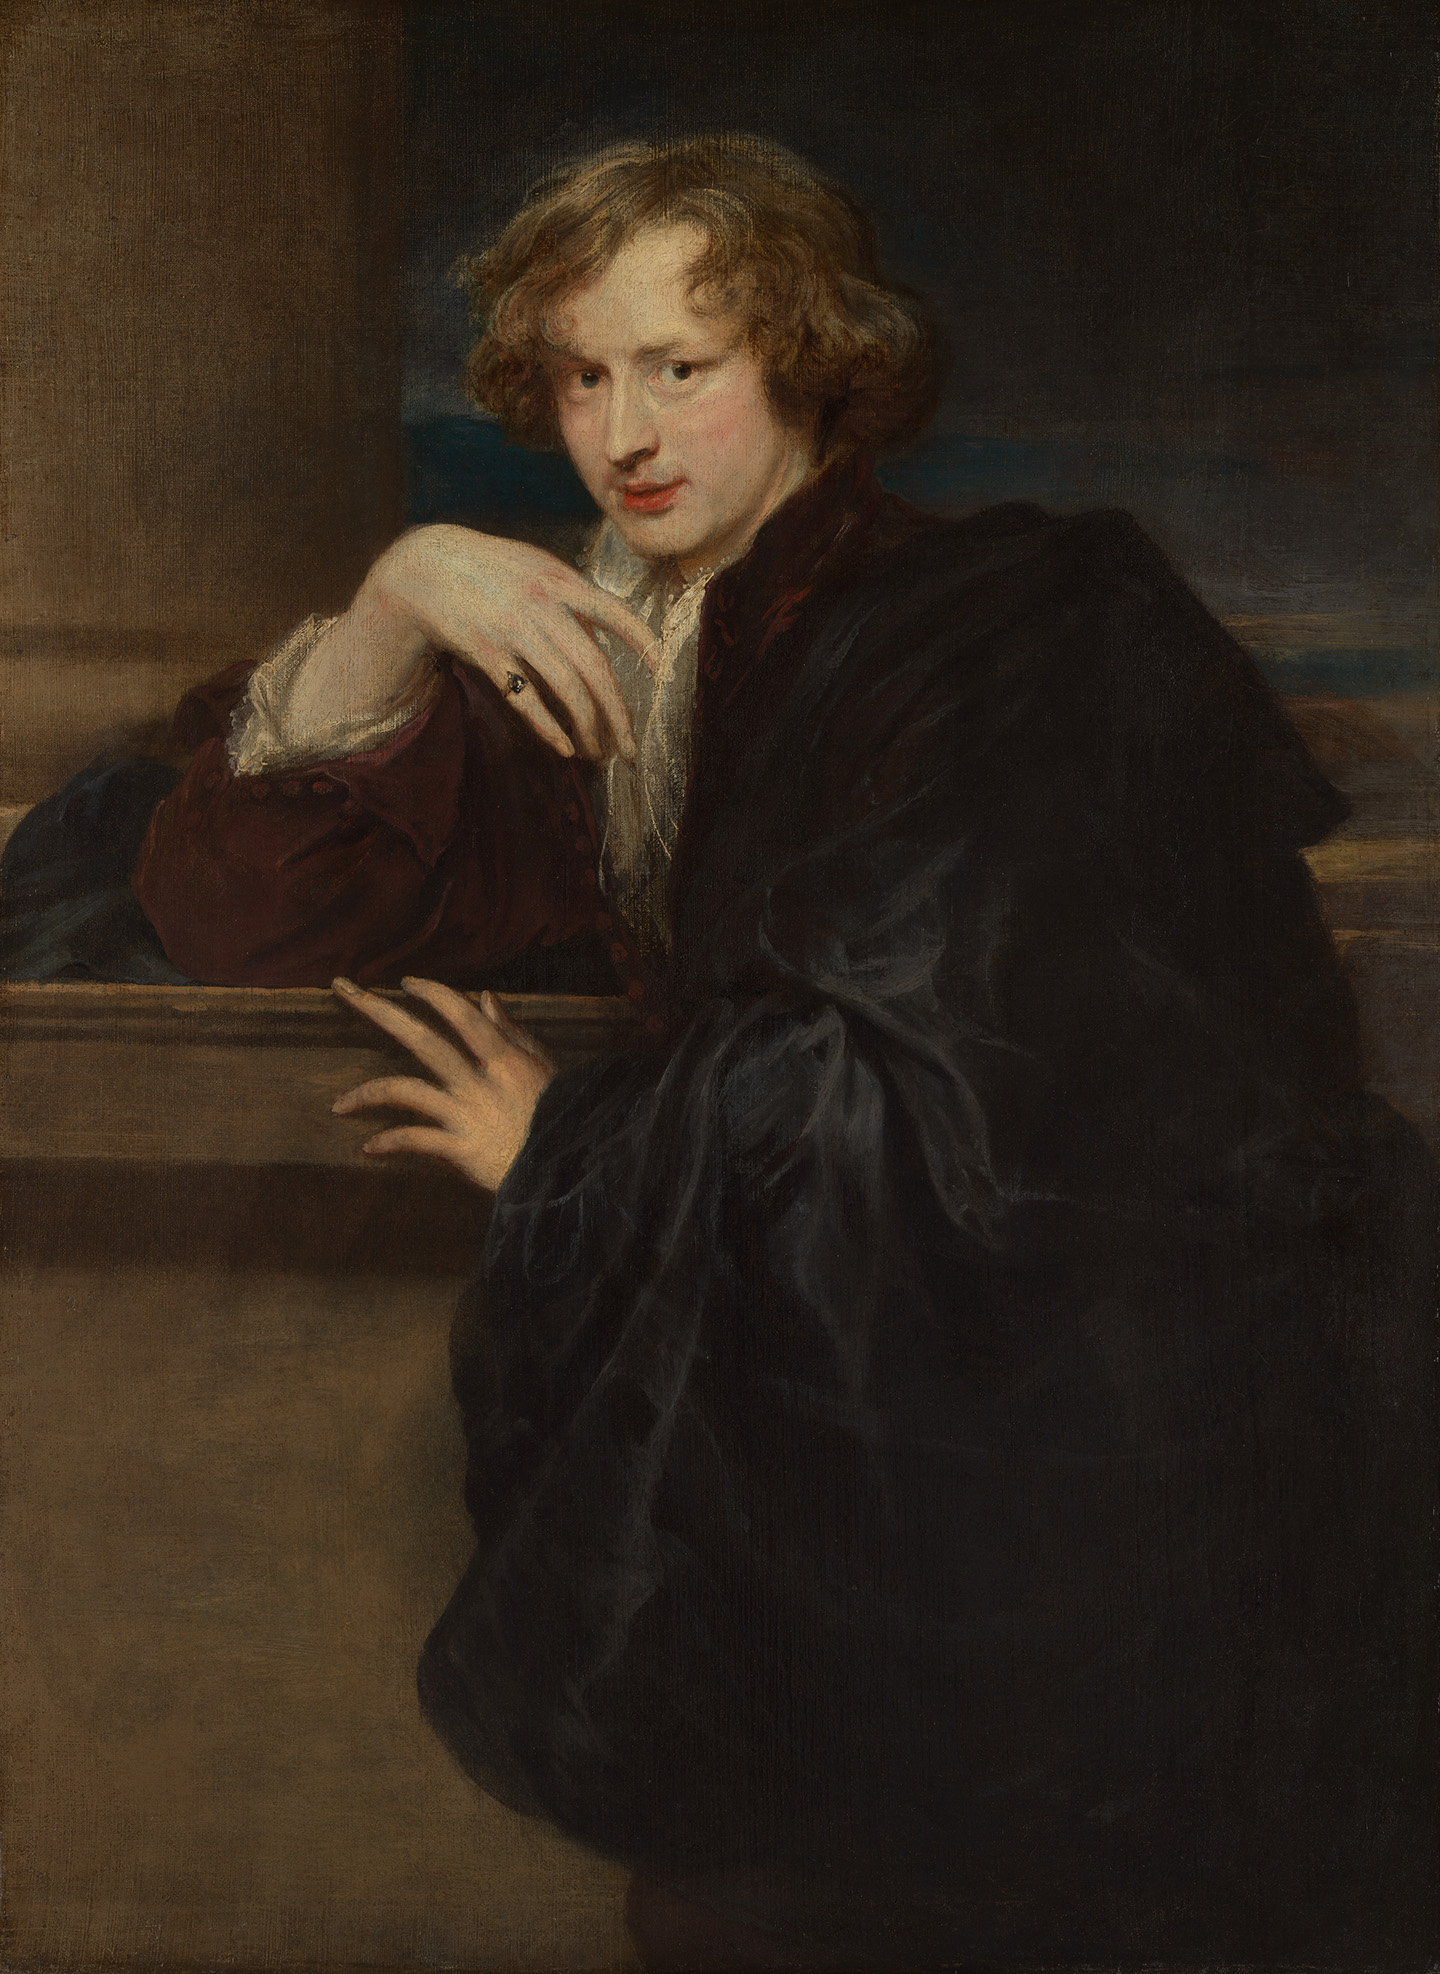 Bức chân dung tự họa của họa sỹ Anthony van Dyck, khoảng năm 1620 – 1621. Sơn dầu trên vải canvas; 47 ⅛ inches x 34 ⅝ inches (~120cm x 88cm). Bảo tàng Nghệ thuật Metropolitan, thành phố New York. (Ảnh: Tư liệu công cộng)